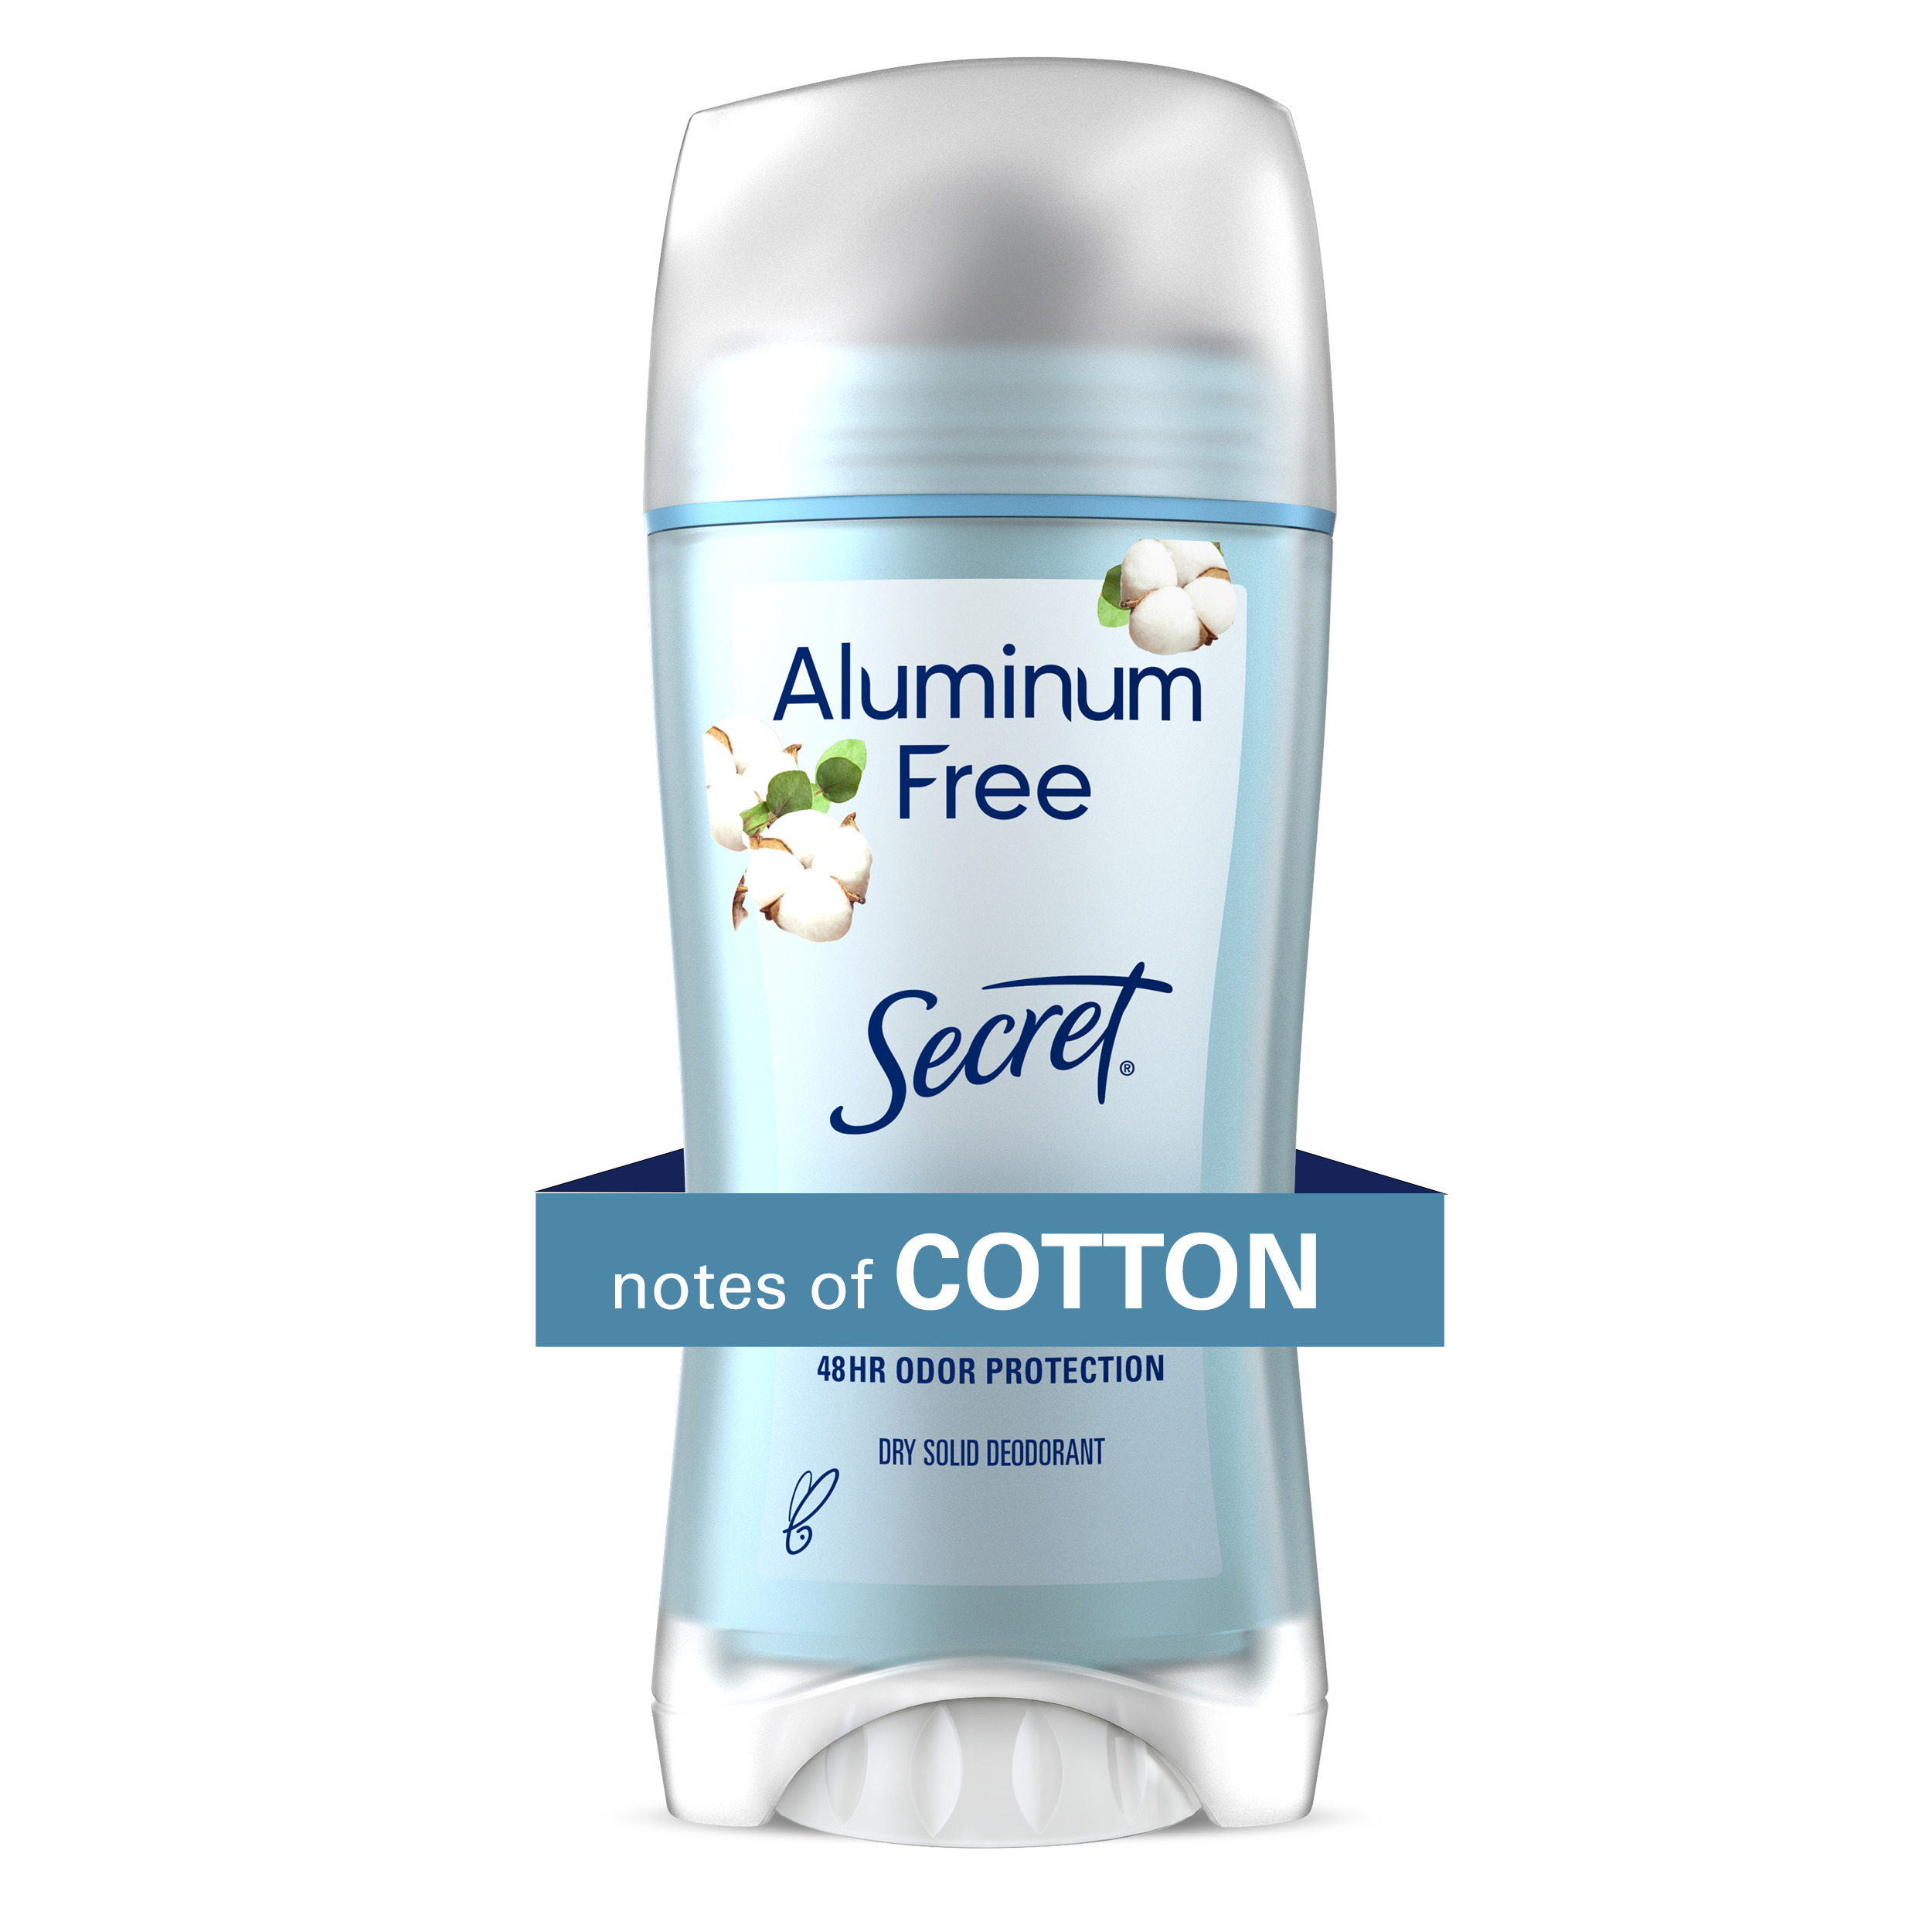 Secret Aluminum Free Deodorant for Women, Cotton, 2.4 oz - image 1 of 12